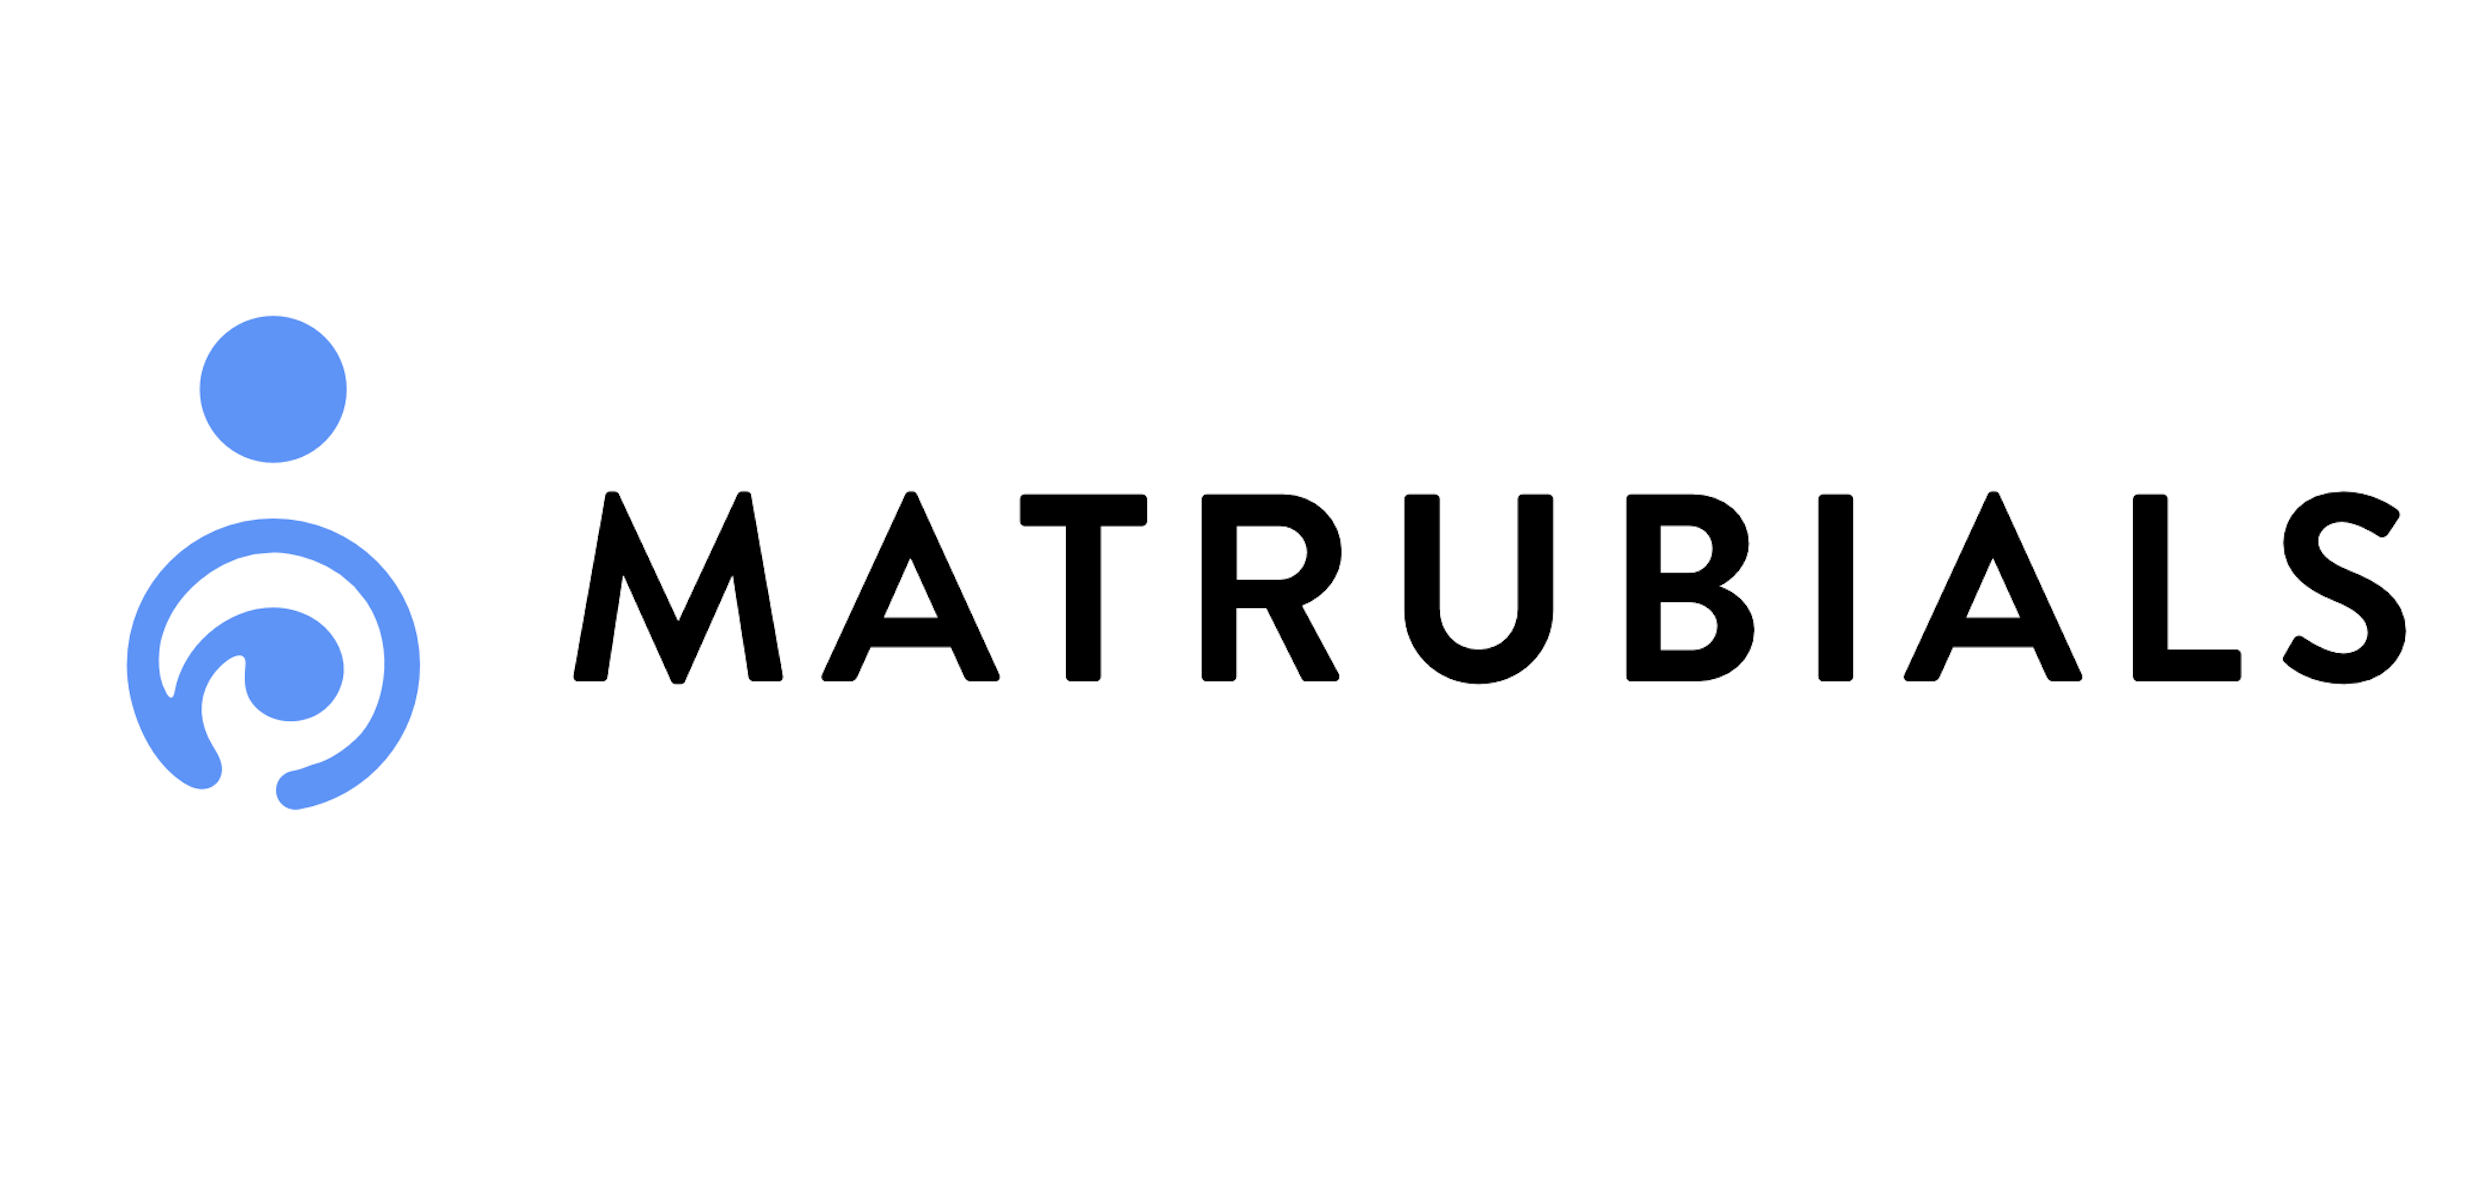 Matrubials Inc.